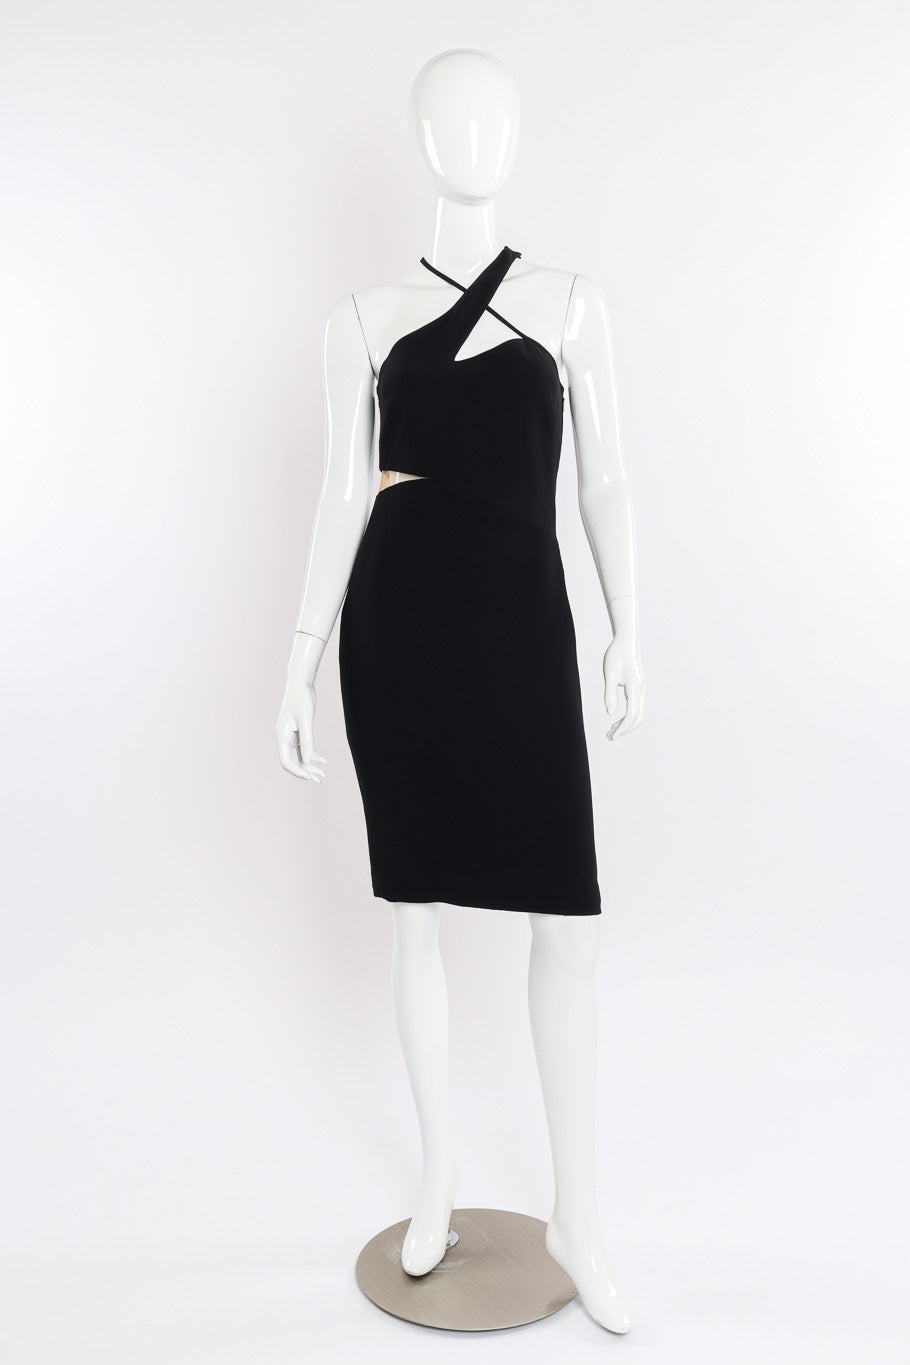 Versace Asymmetric Cut-Out Dress front view on mannequin @Recessla